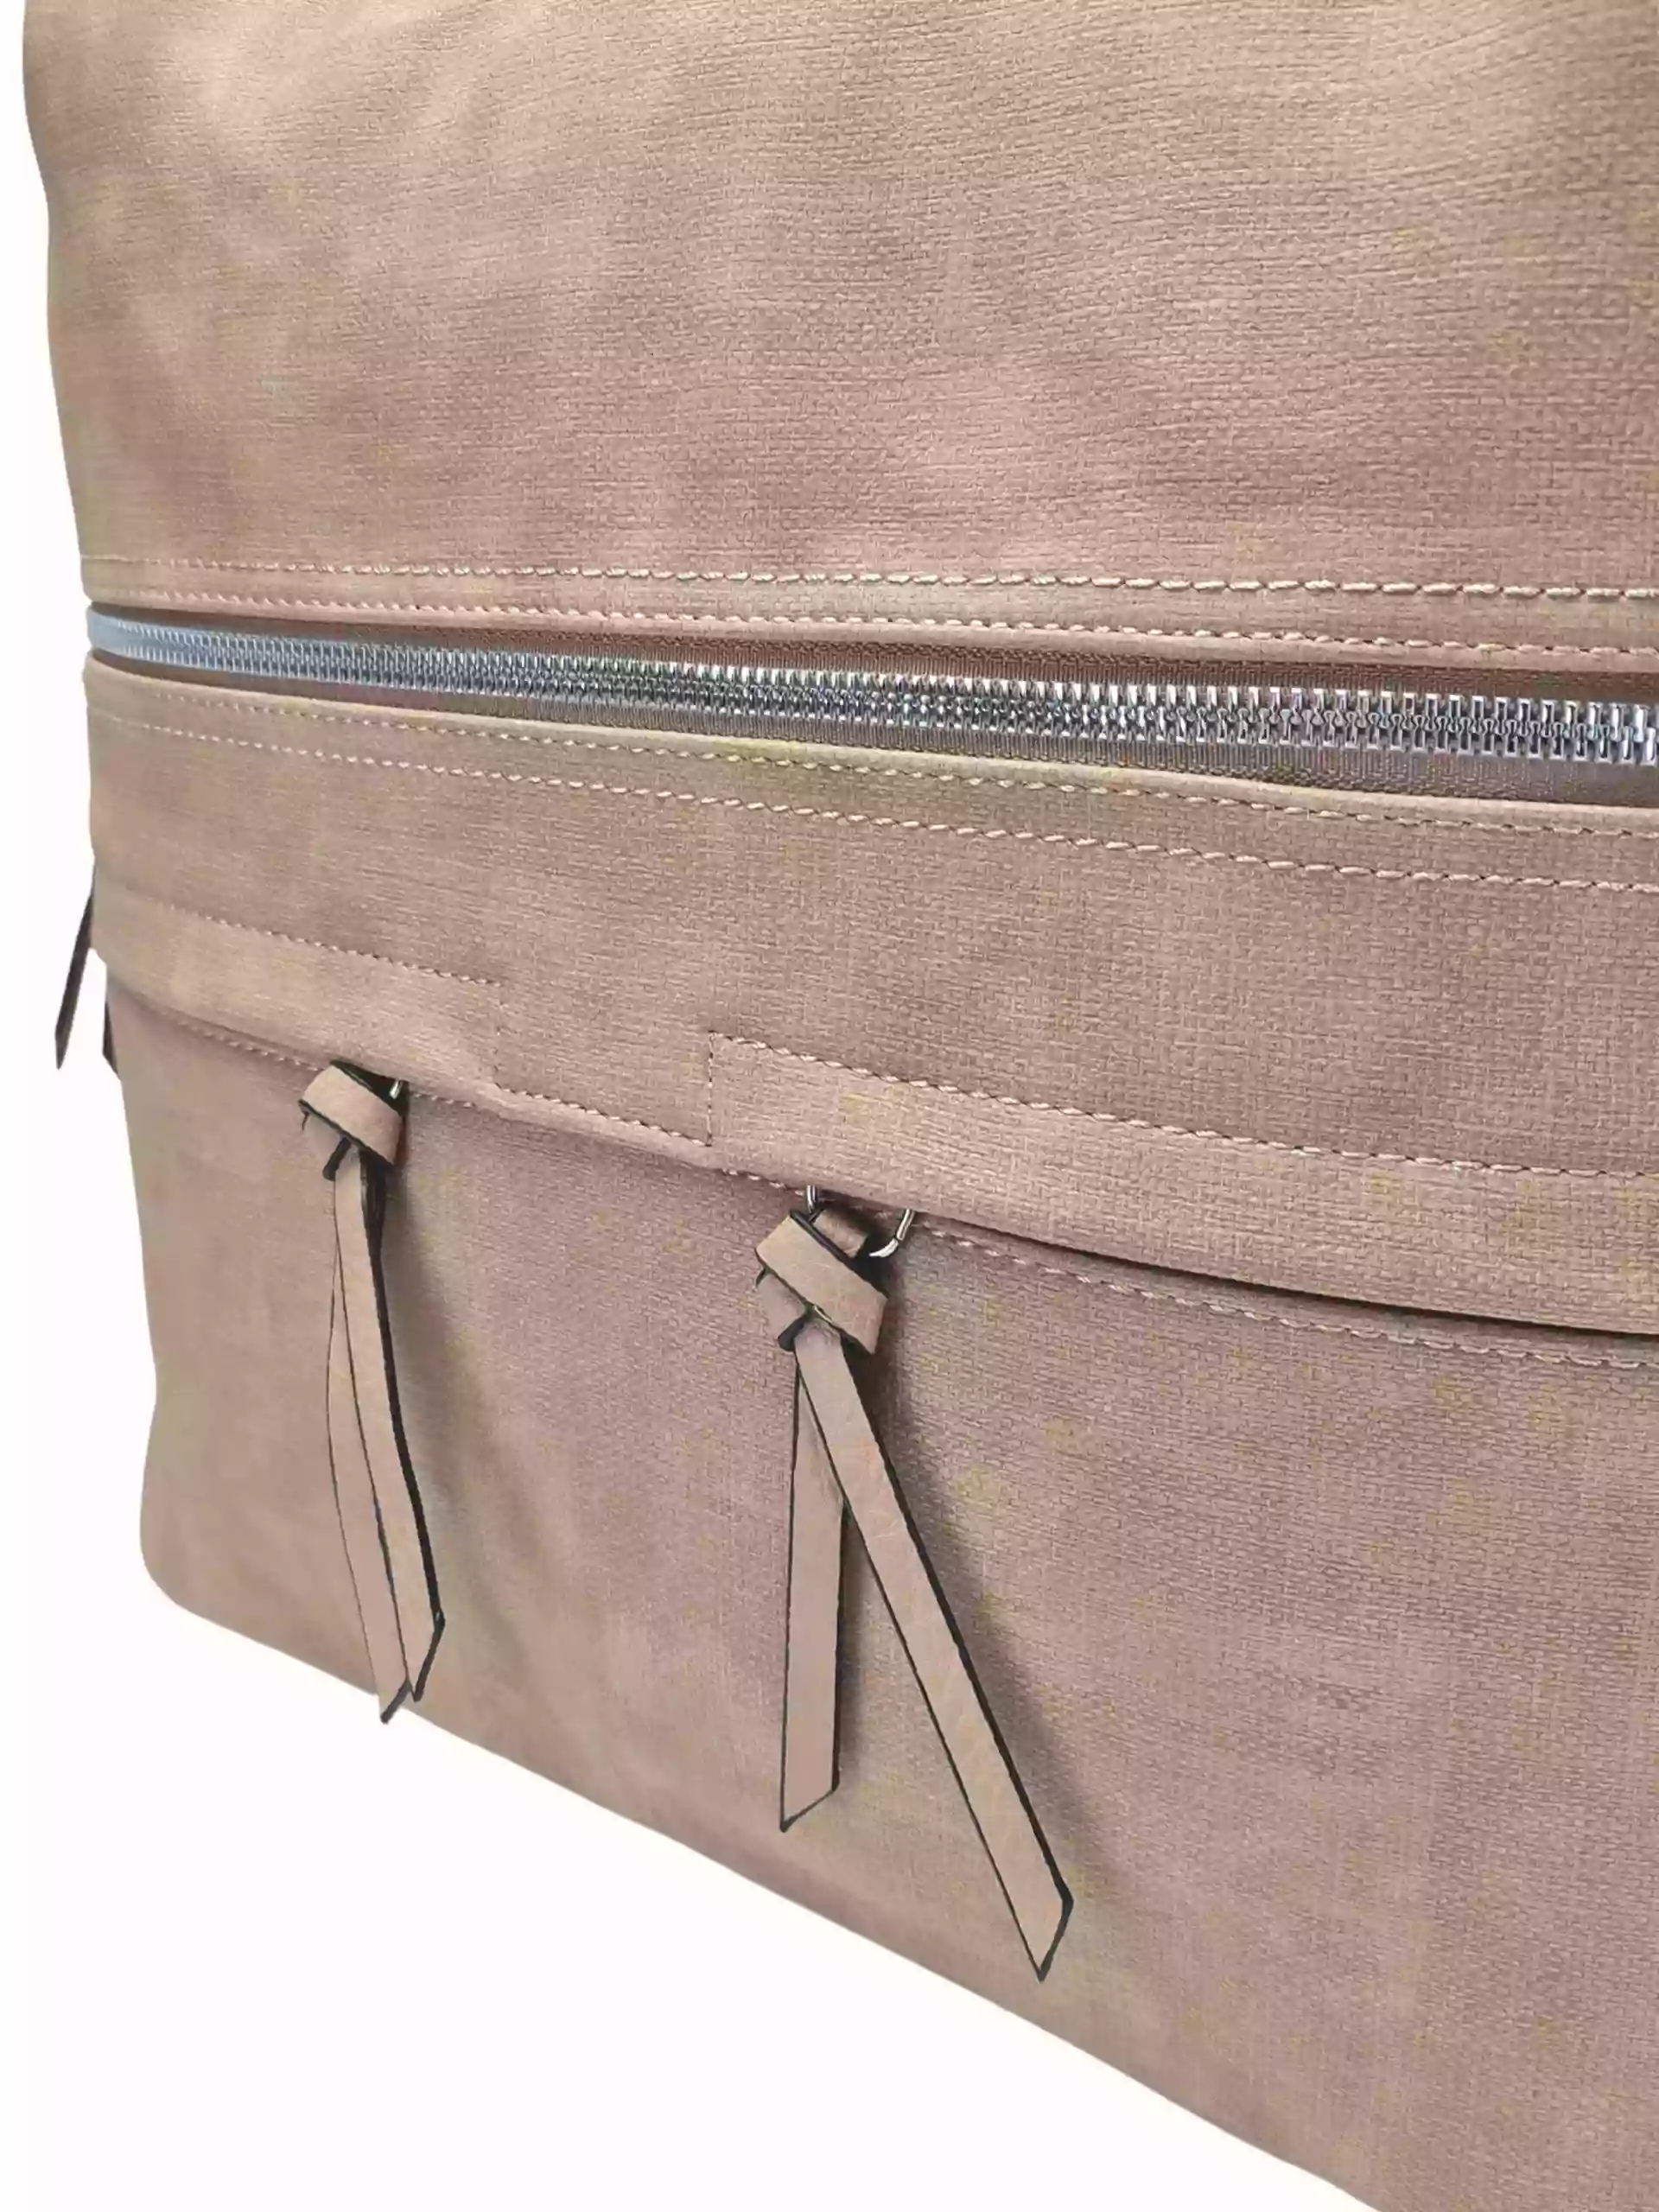 Velká světle hnědá kabelka a batoh 2v1 s kapsami, Tapple, H181175N, detail přední strany kabelky a batohu 2v1